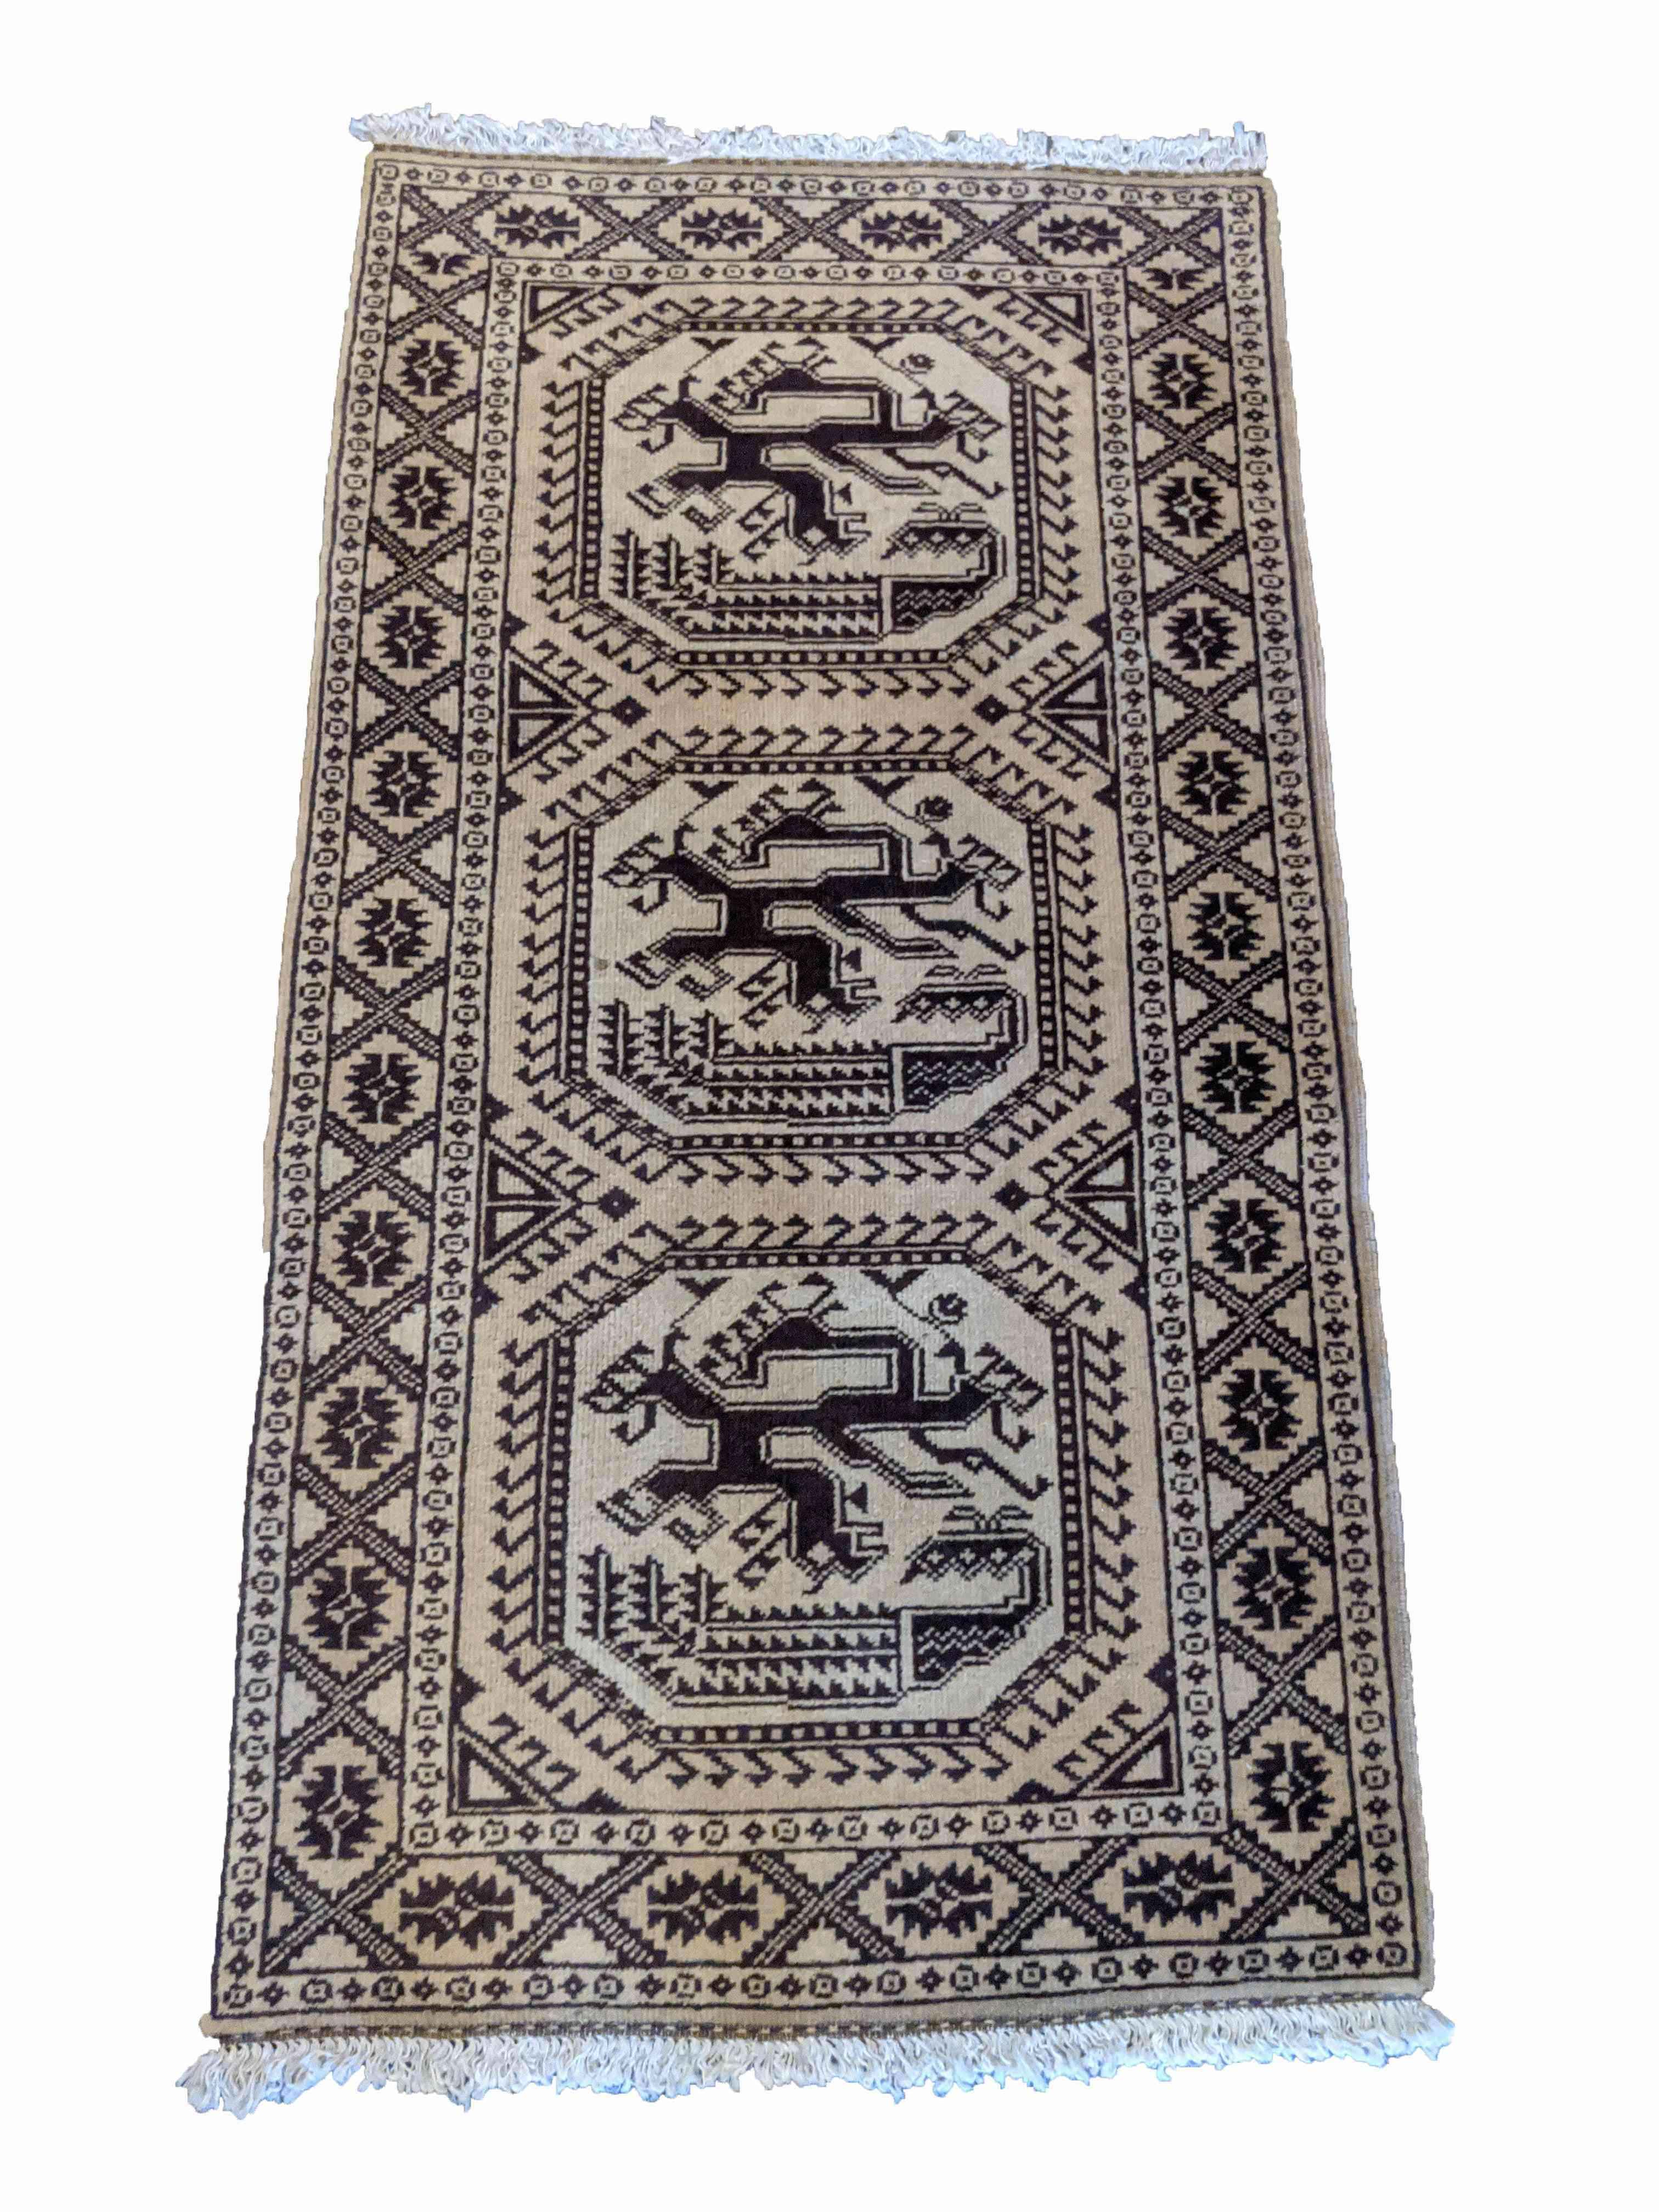 Old golden afghan rug